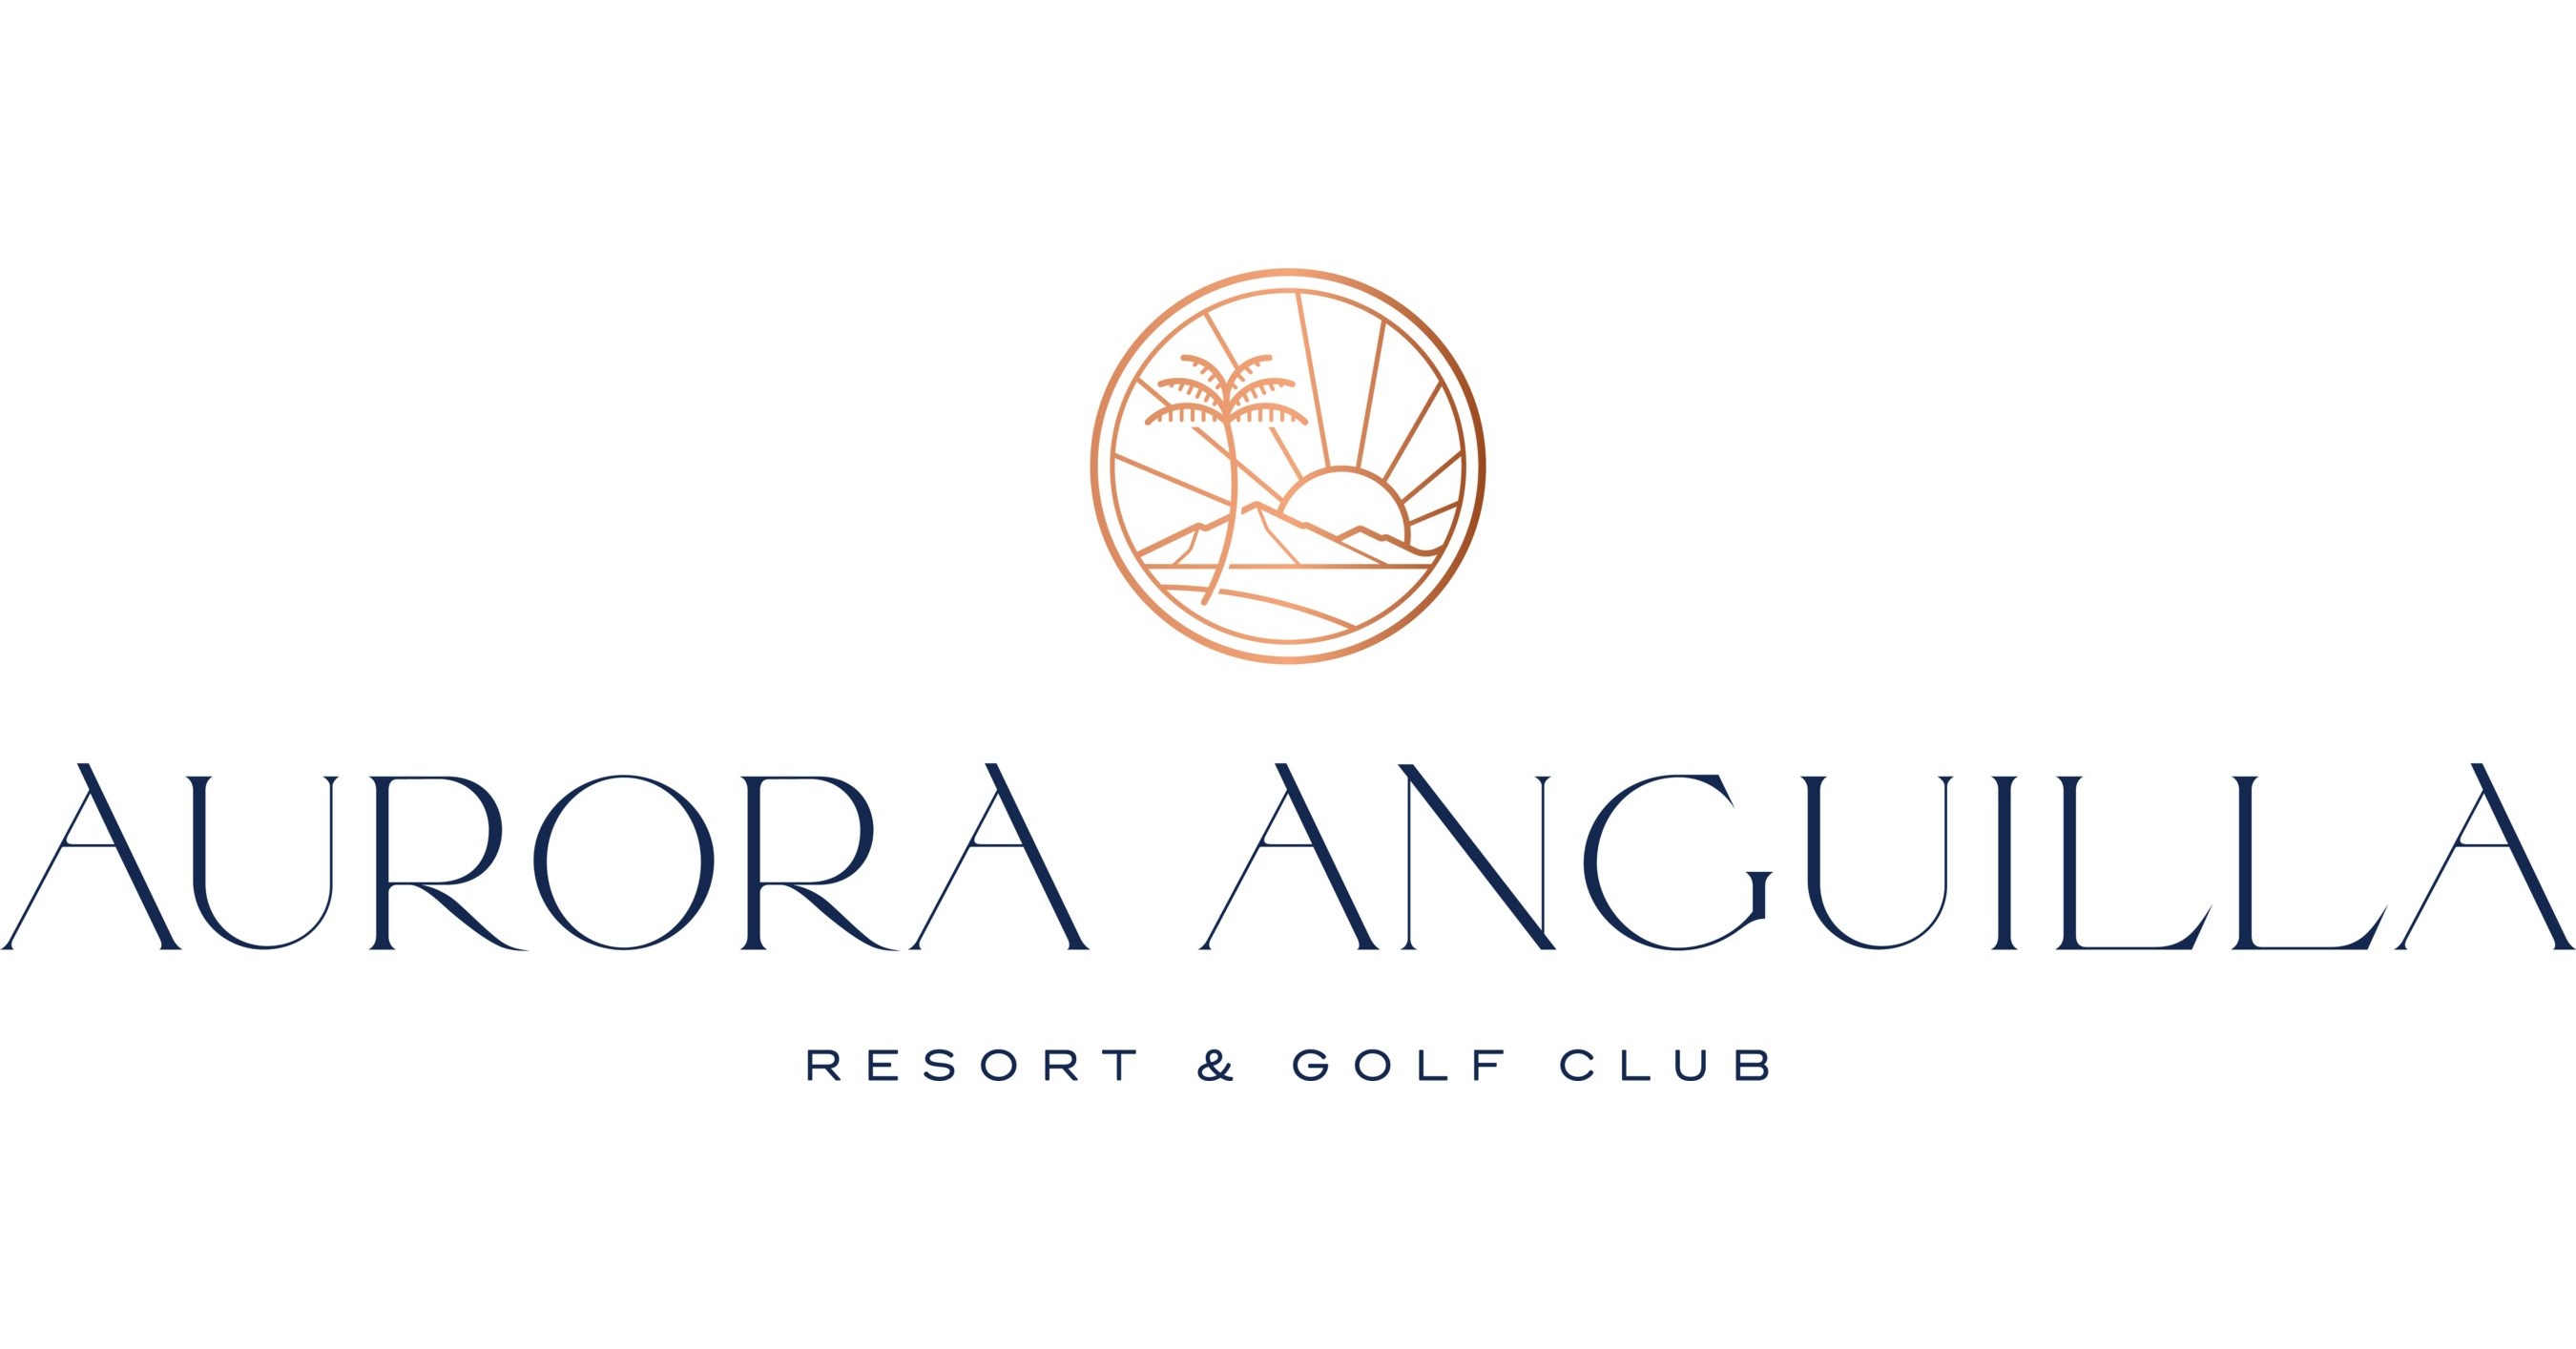 Aurora International Golf Club in Anguilla